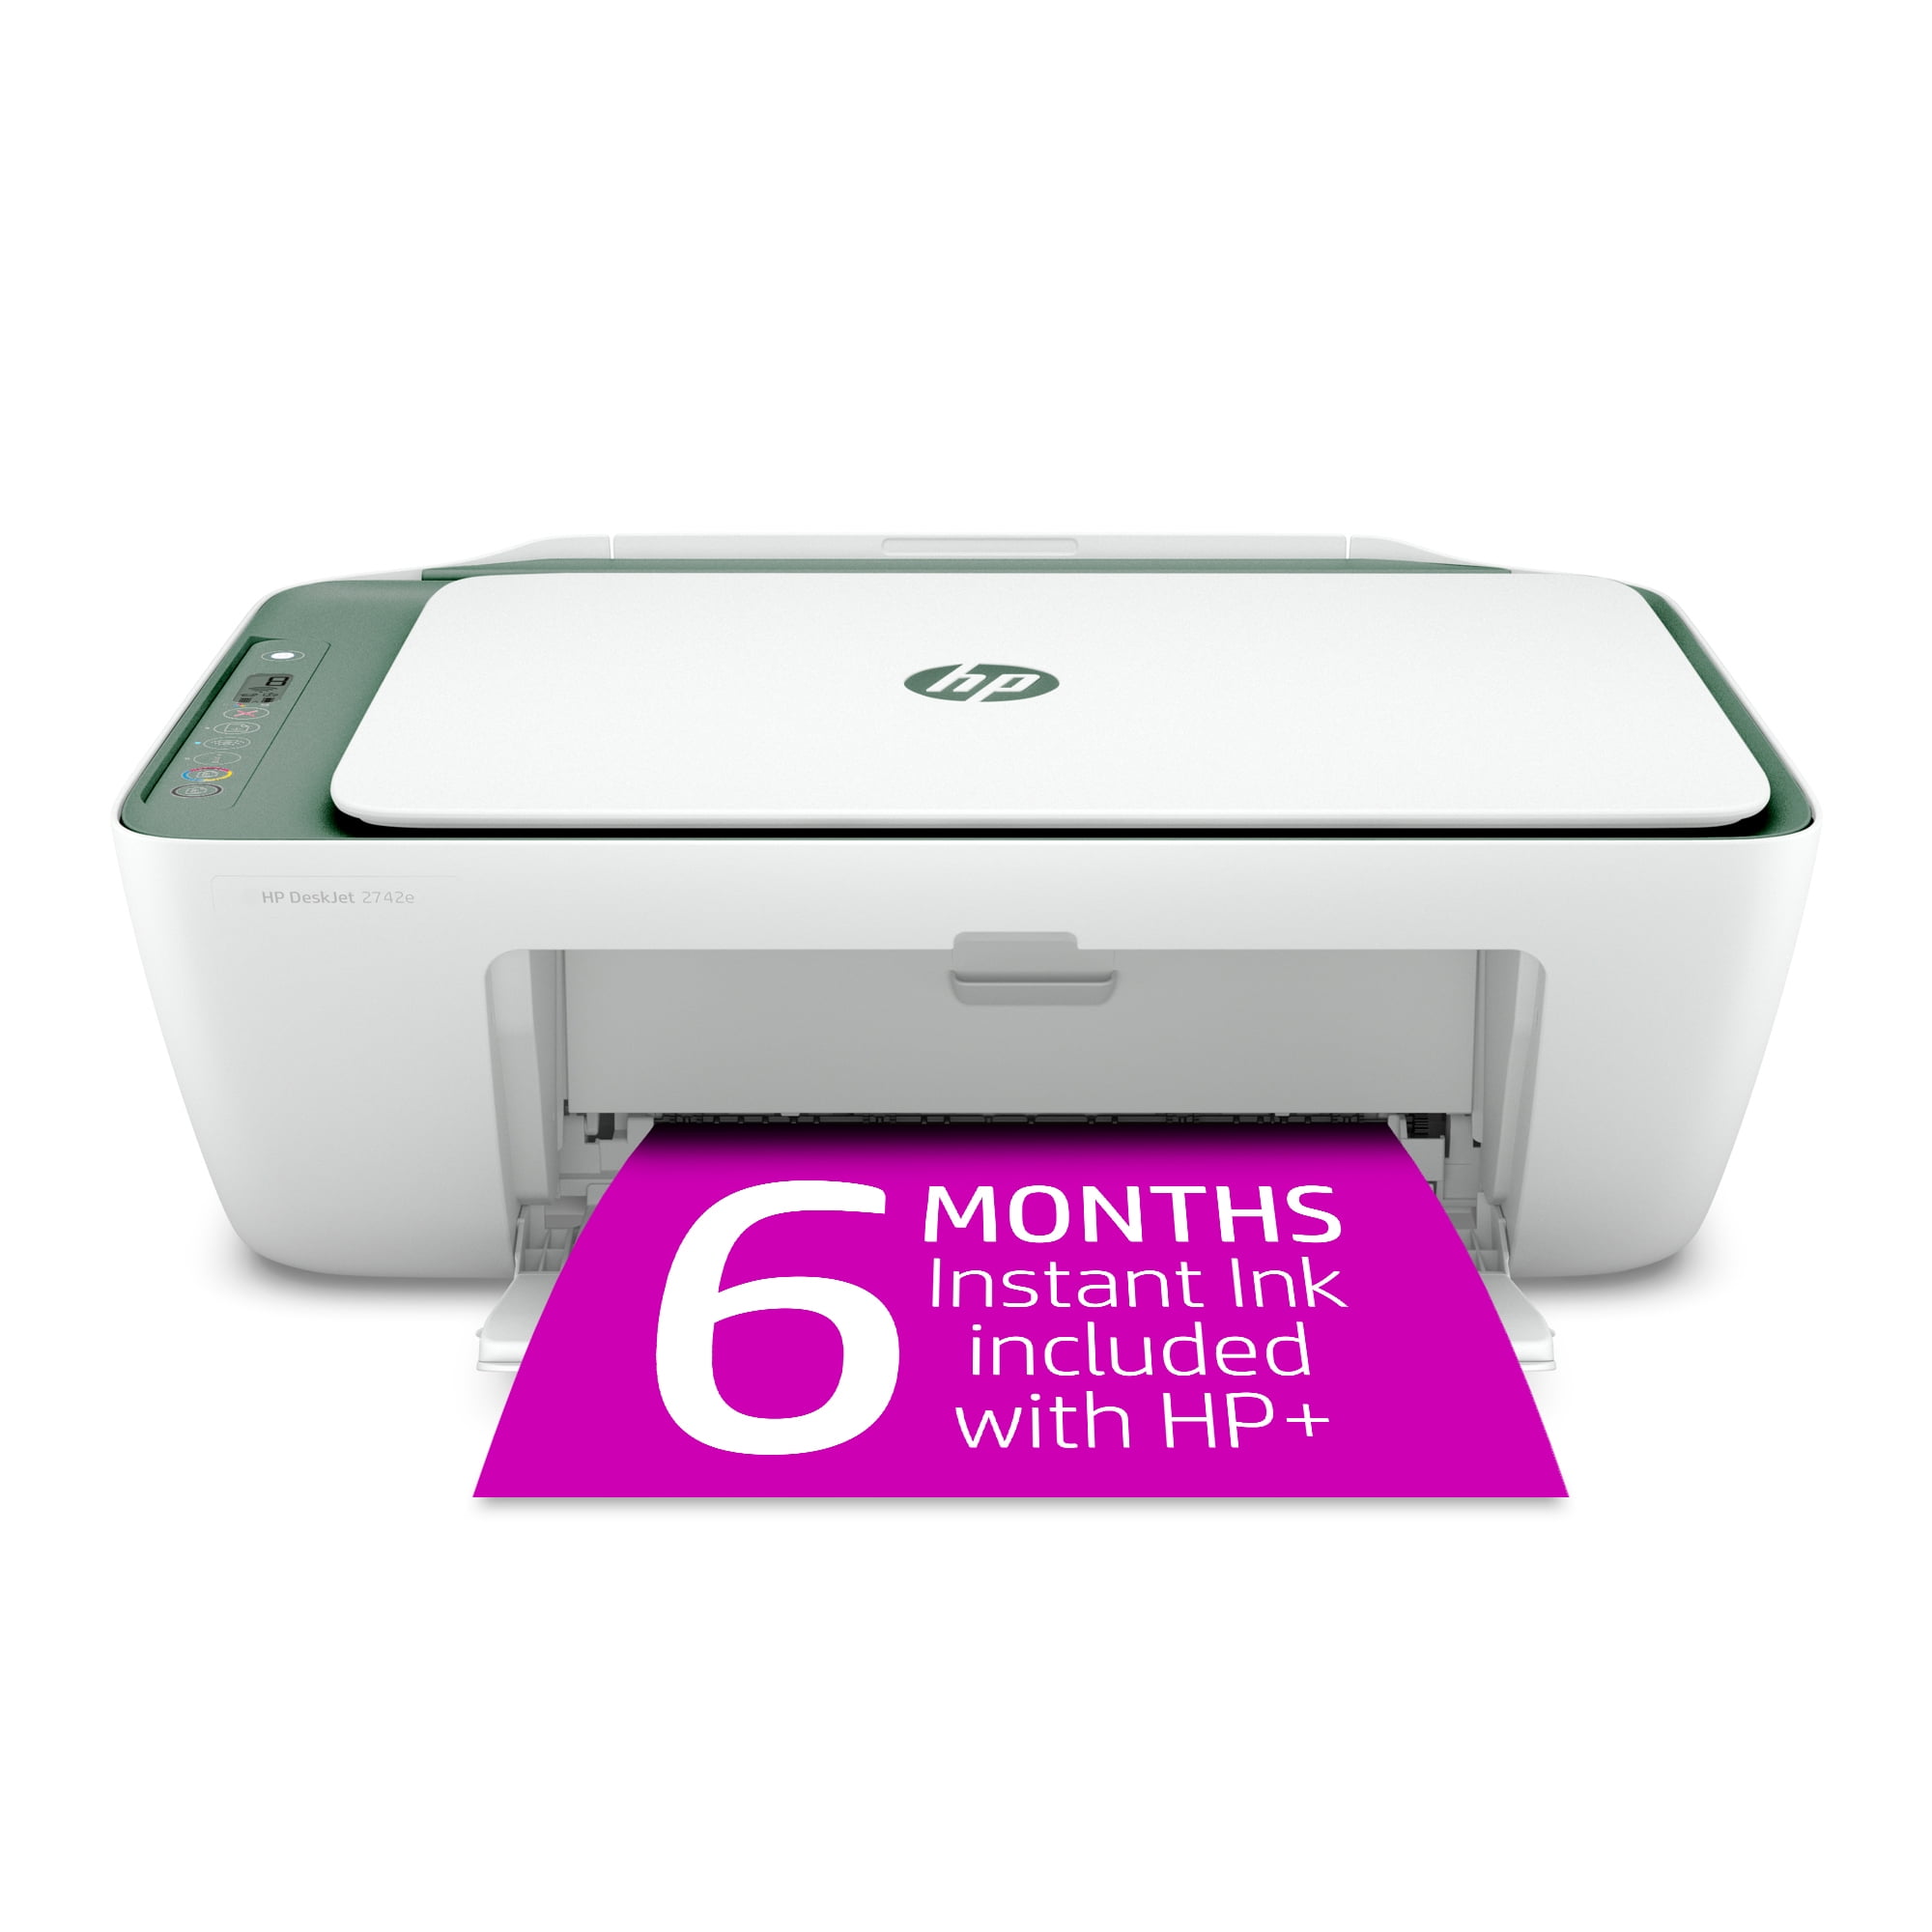 Par terrorist klasselærer HP DeskJet 2742e Wireless Color All-in-One Inkjet Printer (Green Matcha)  with 6 months Instant Ink Included with HP+ - Walmart.com